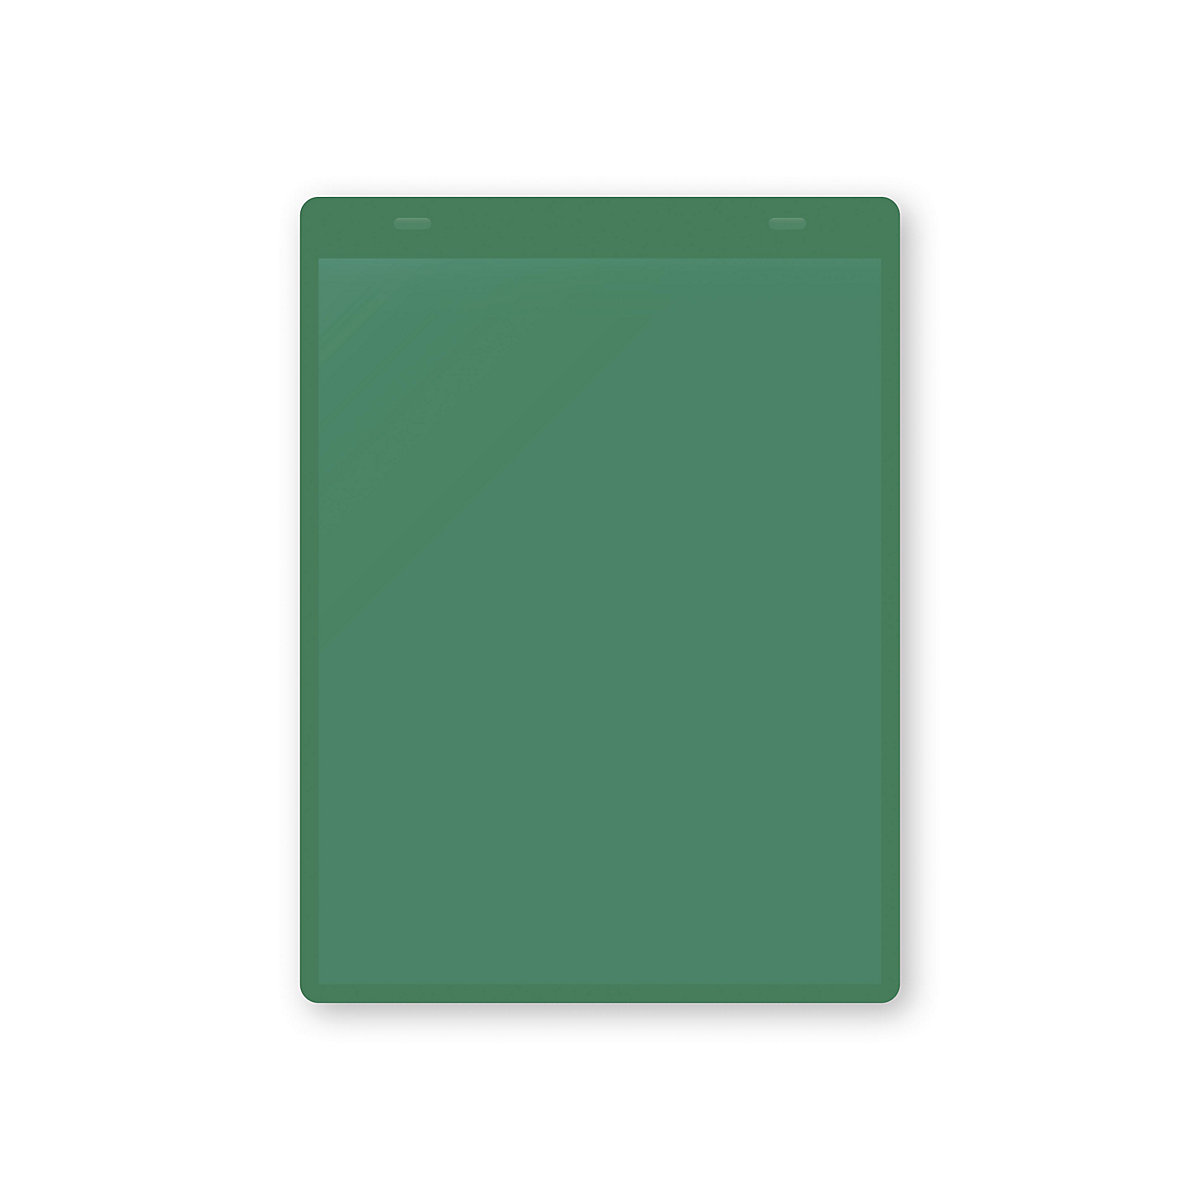 Öntapadó dokumentumtartó tasakok, DIN A5, álló, cs. e. 50 db, zöld